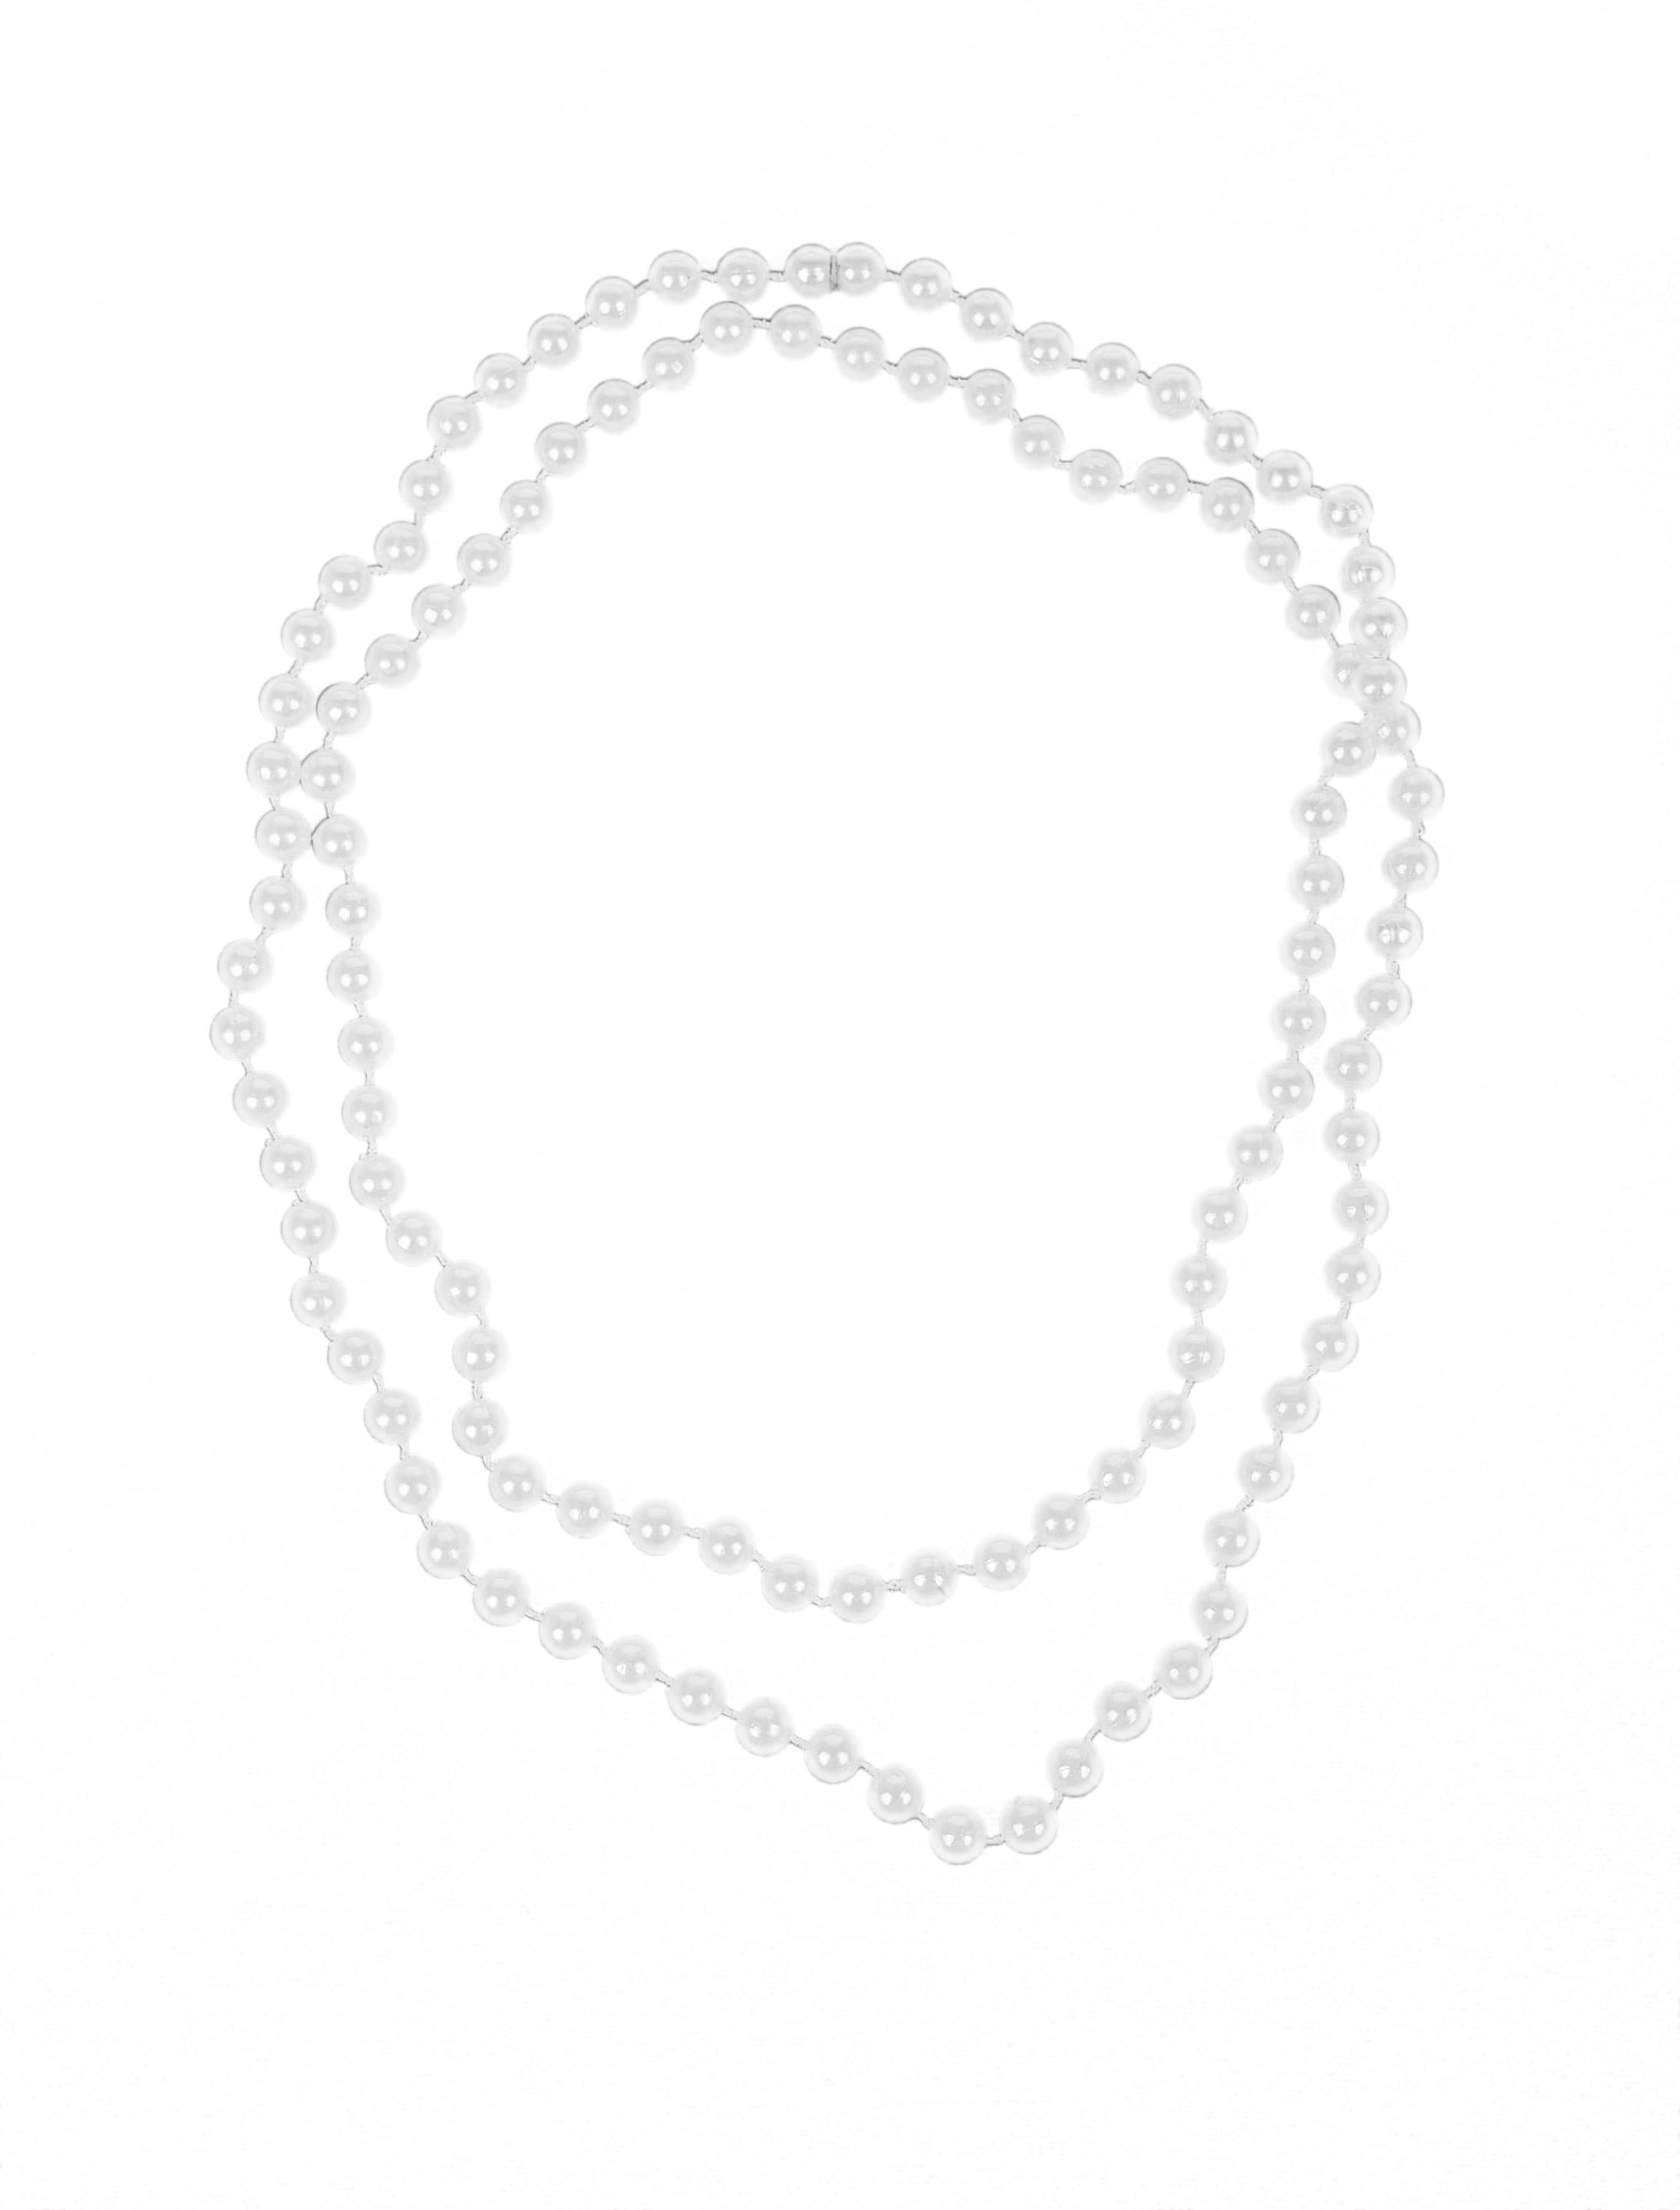 Halskette Perlen 122cm weiß